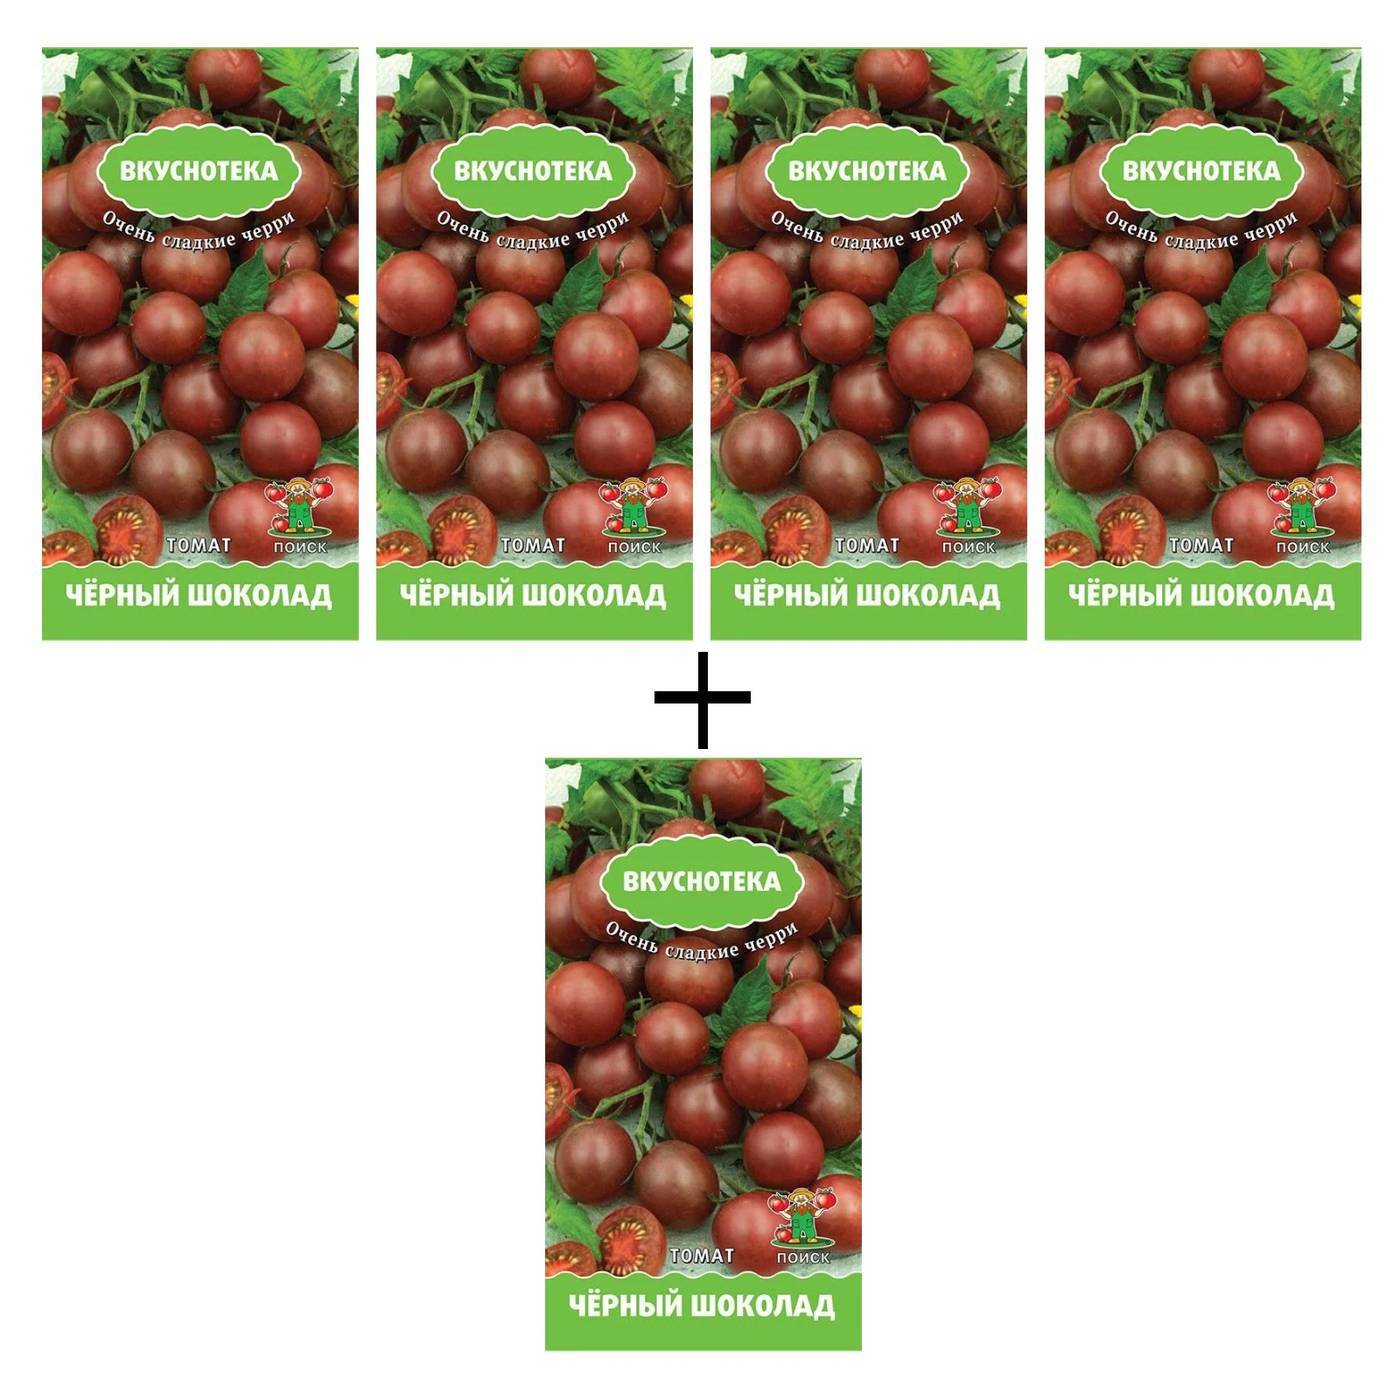 Шоколадный томат: характеристика и описание сорта, отзывы